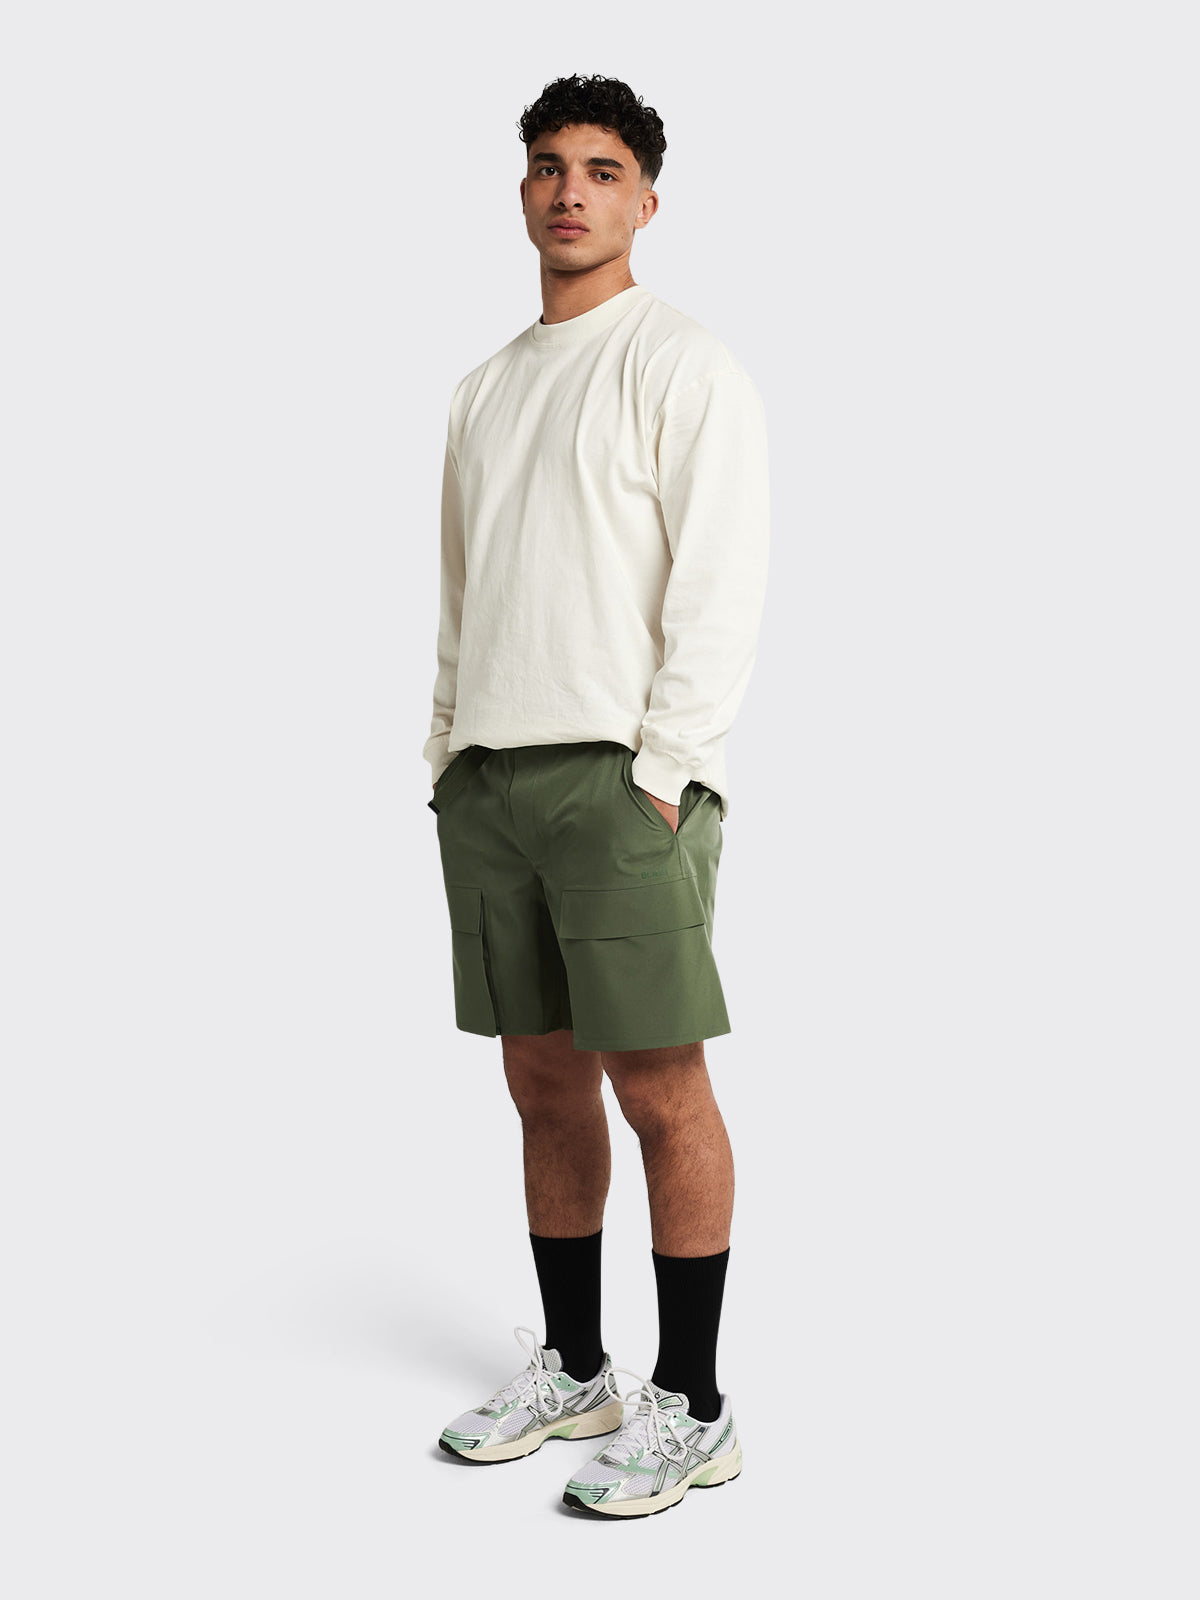 Man wearing Giske shorts by Blæst in Dusty Green